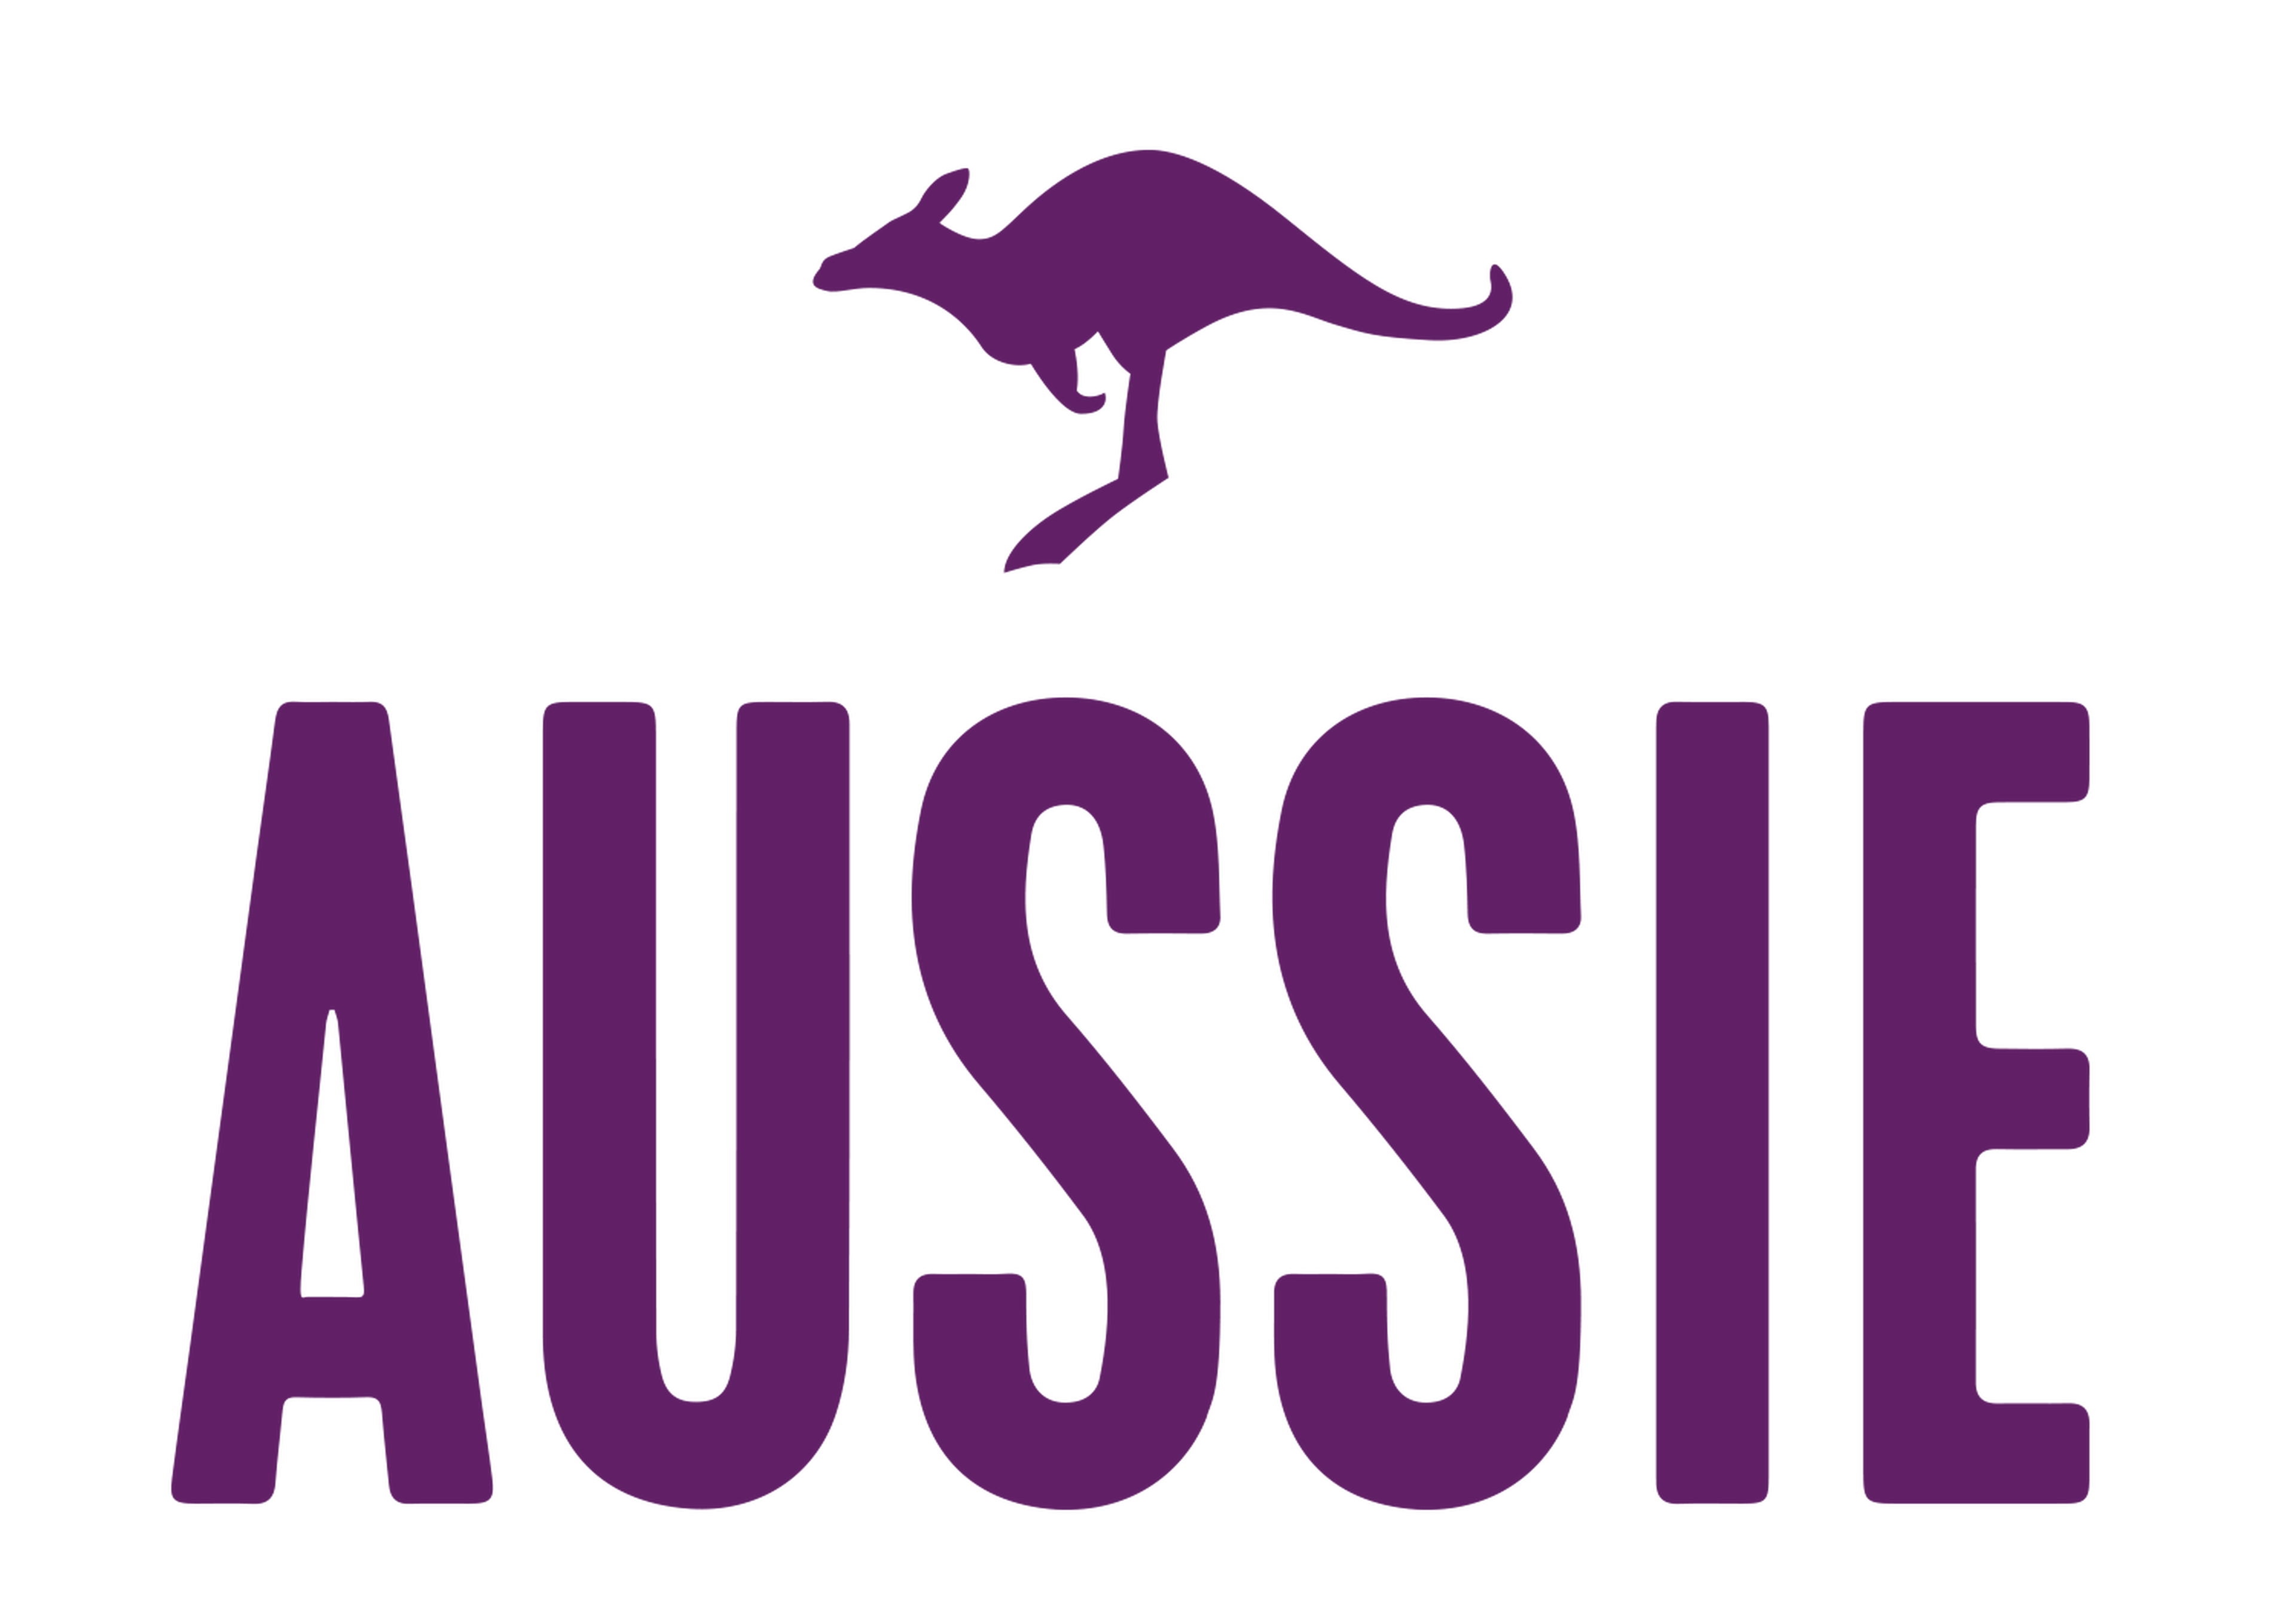 Aussie logotype